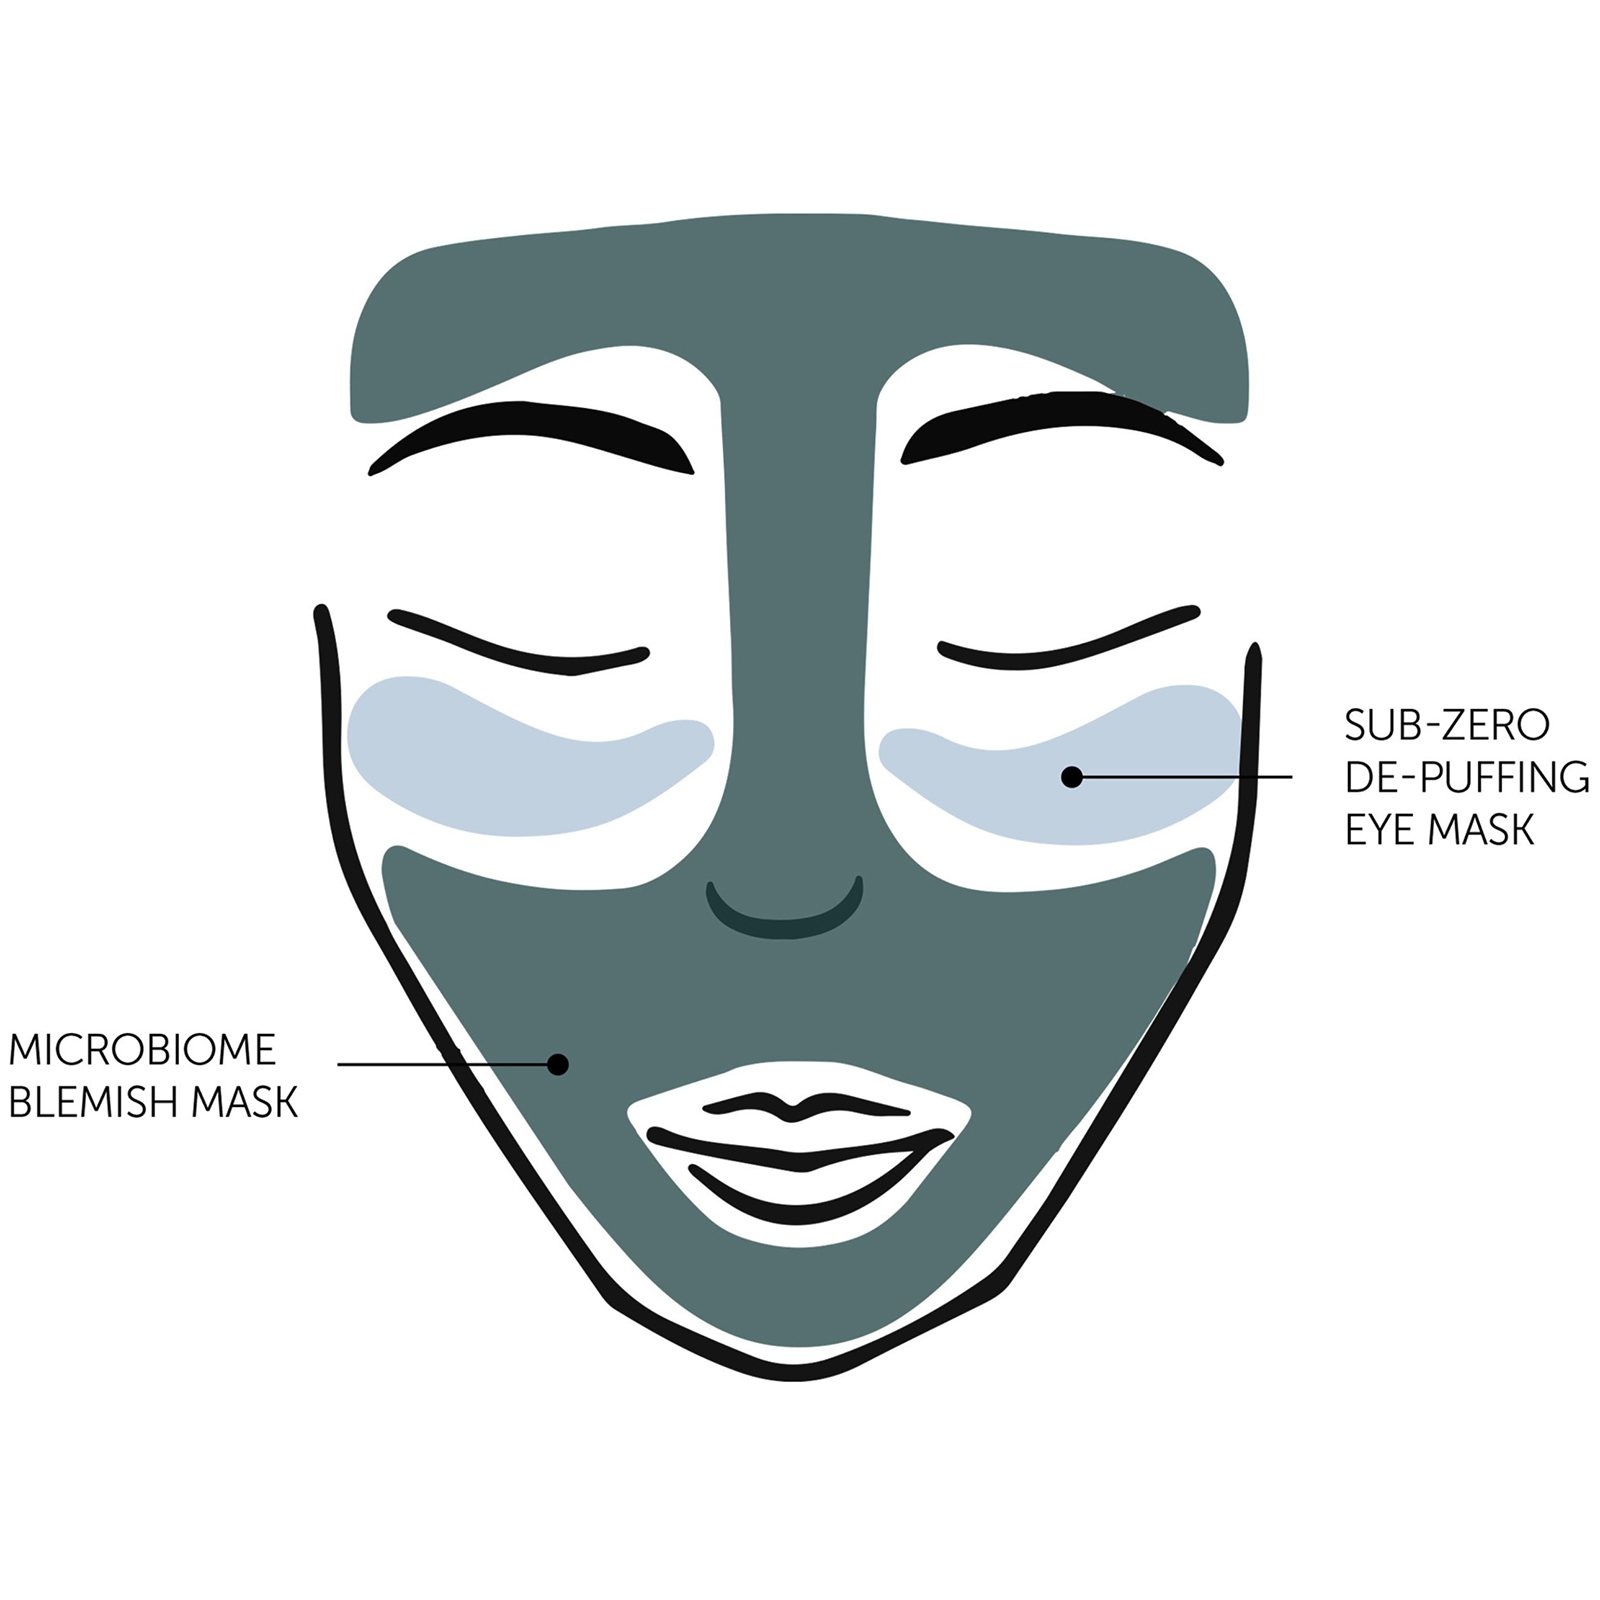 Microbiome blemish mask, sub-zero depuffing eye mask